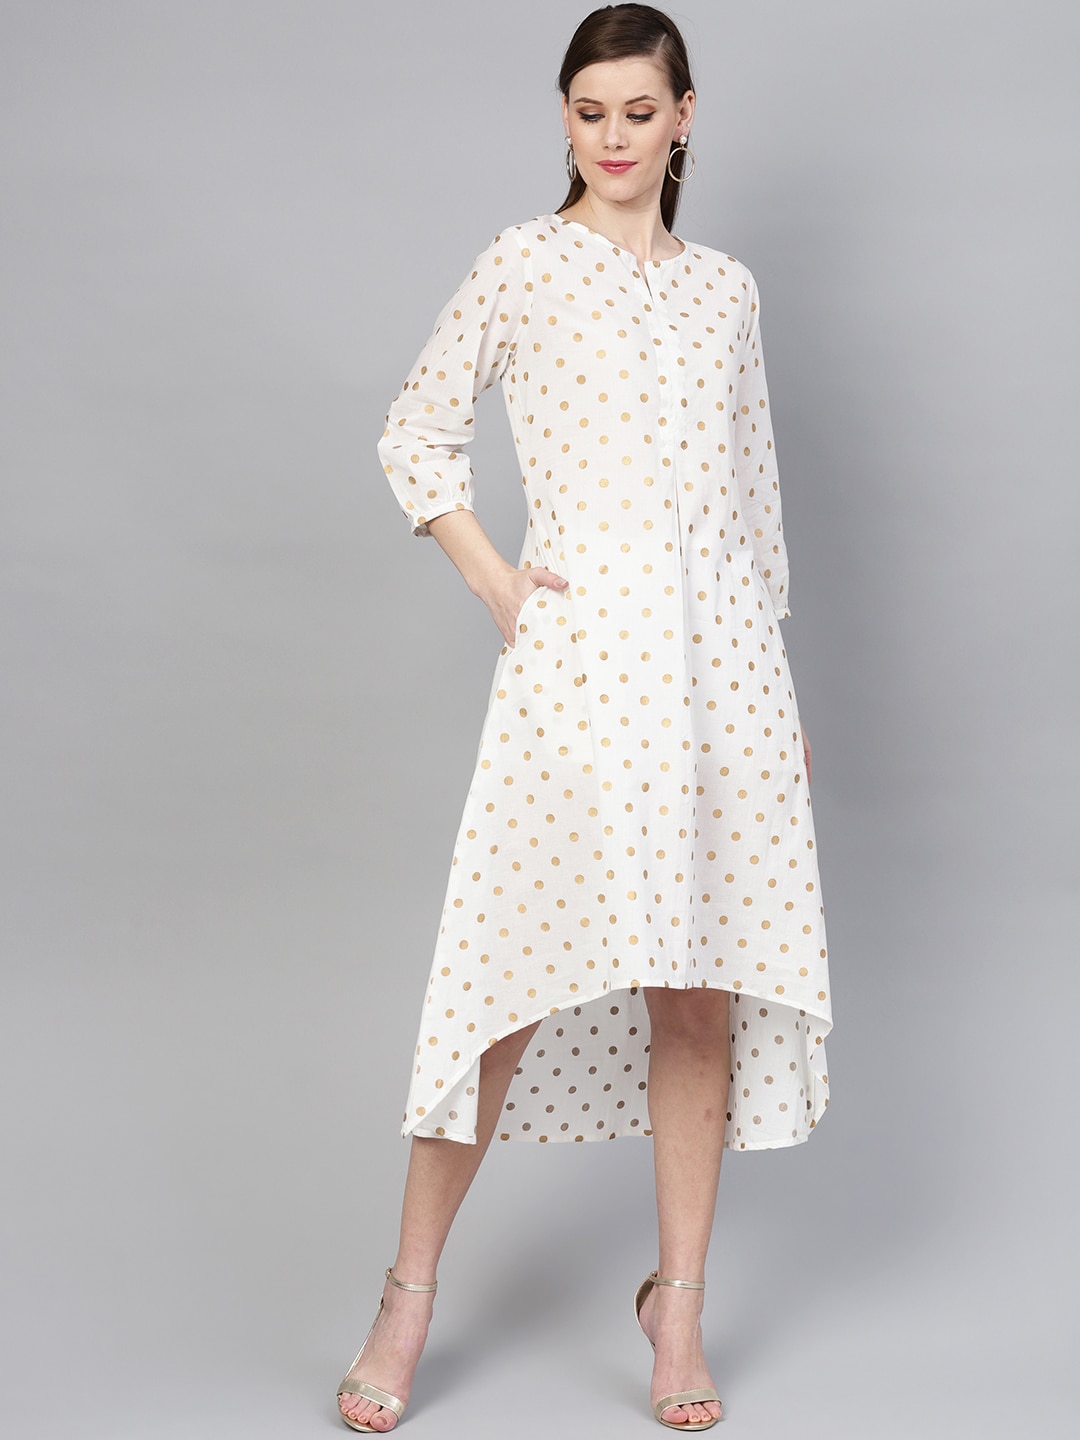 Varanga Women White & Beige Polka Dots Printed A-Line Dress Price in India